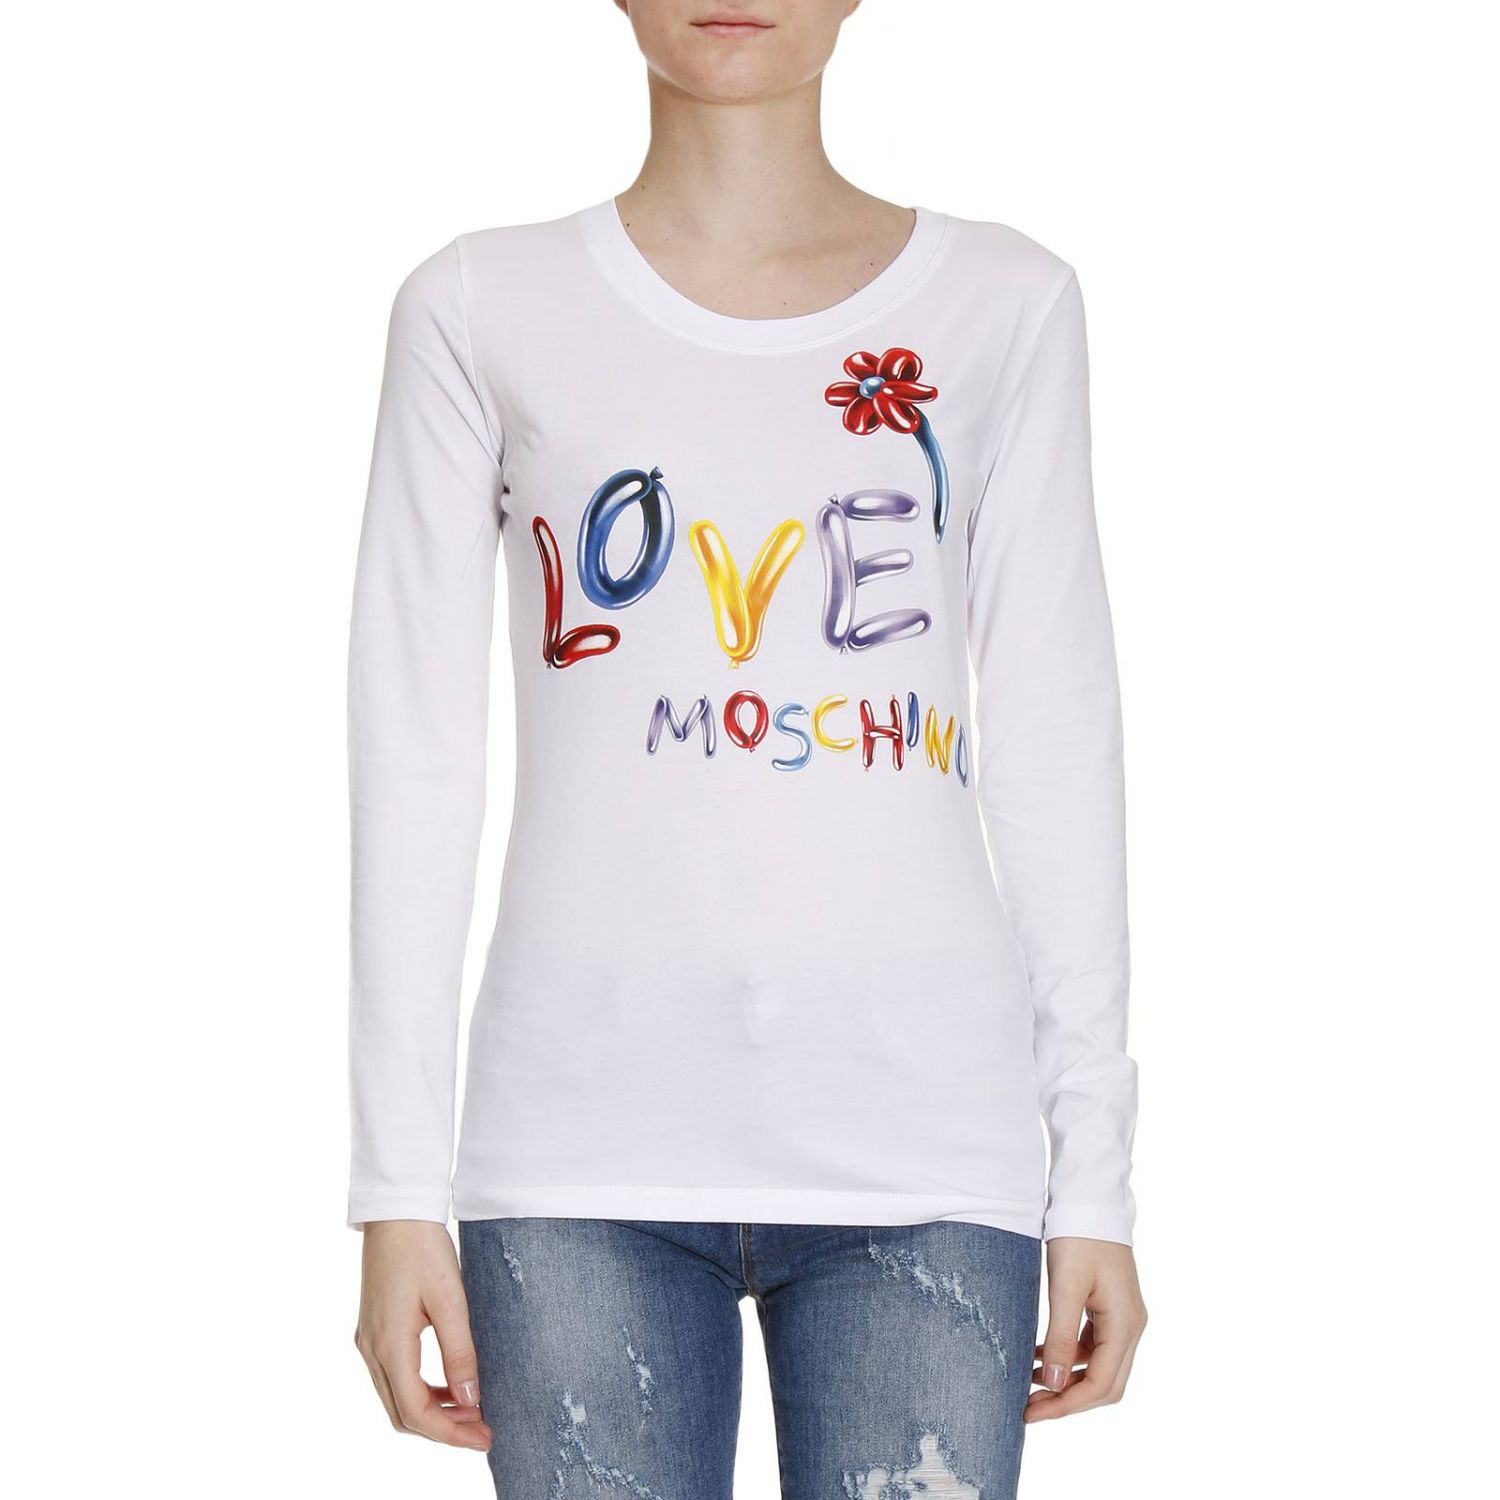 Love Moschino Outlet: T-shirt women Moschino Love | T-Shirt Love ...